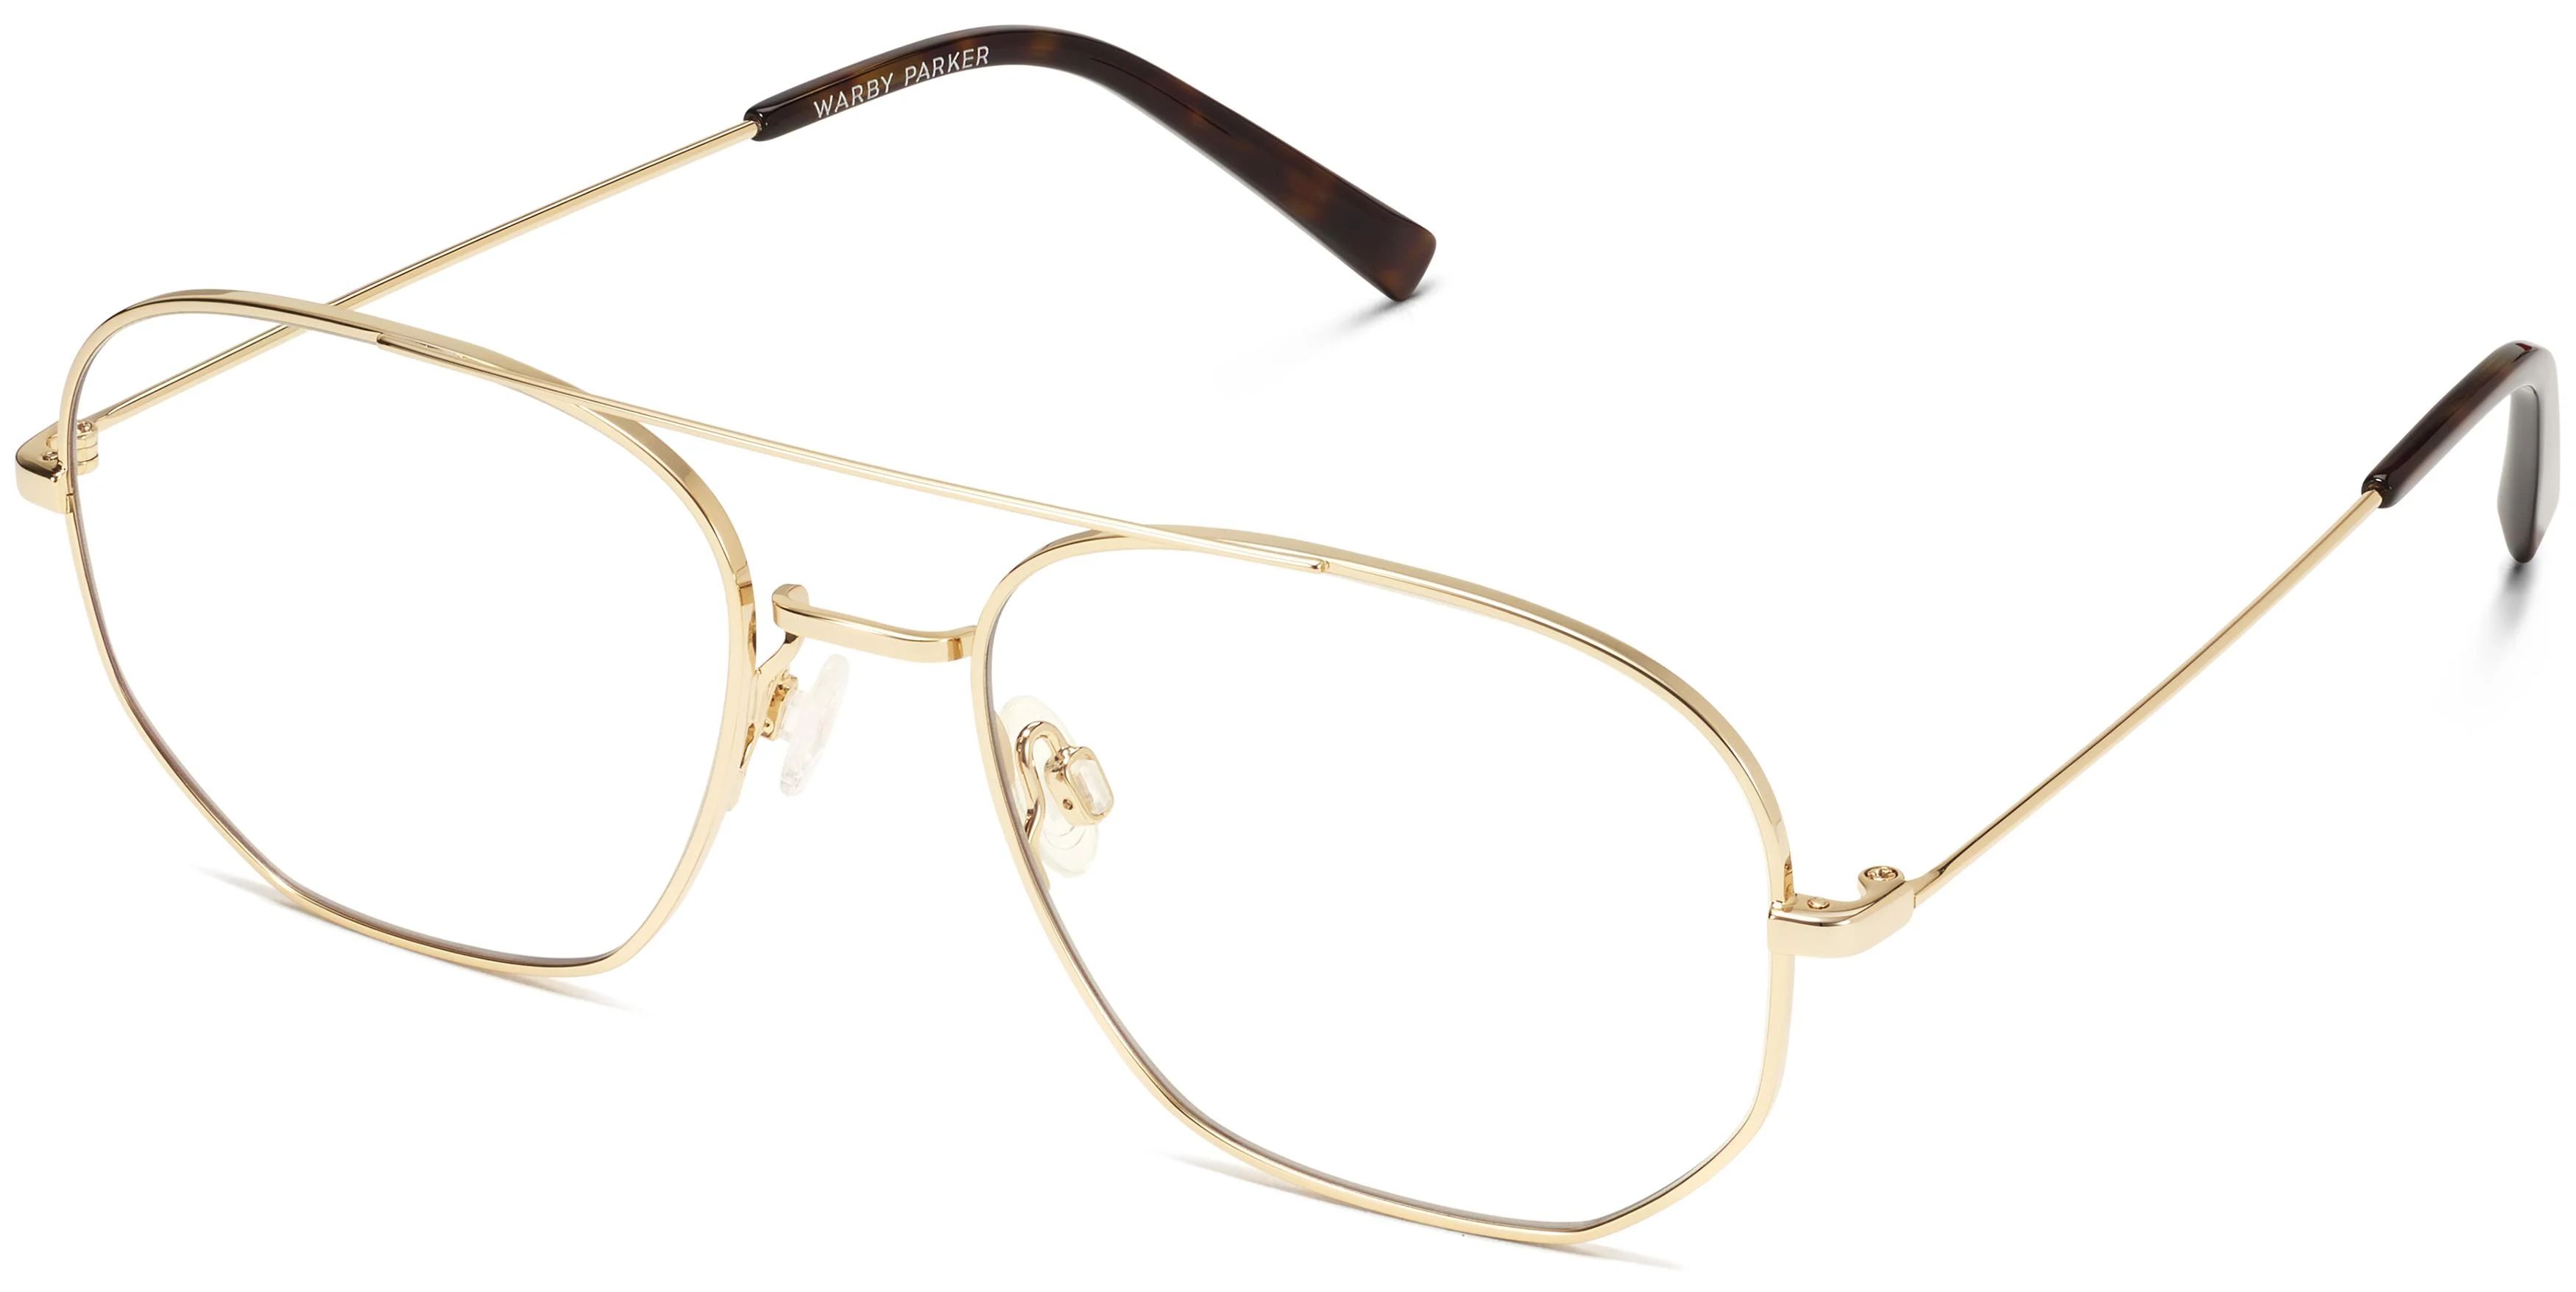 Aram Eyeglasses in Polished Gold | Warby Parker | Warby Parker (US)